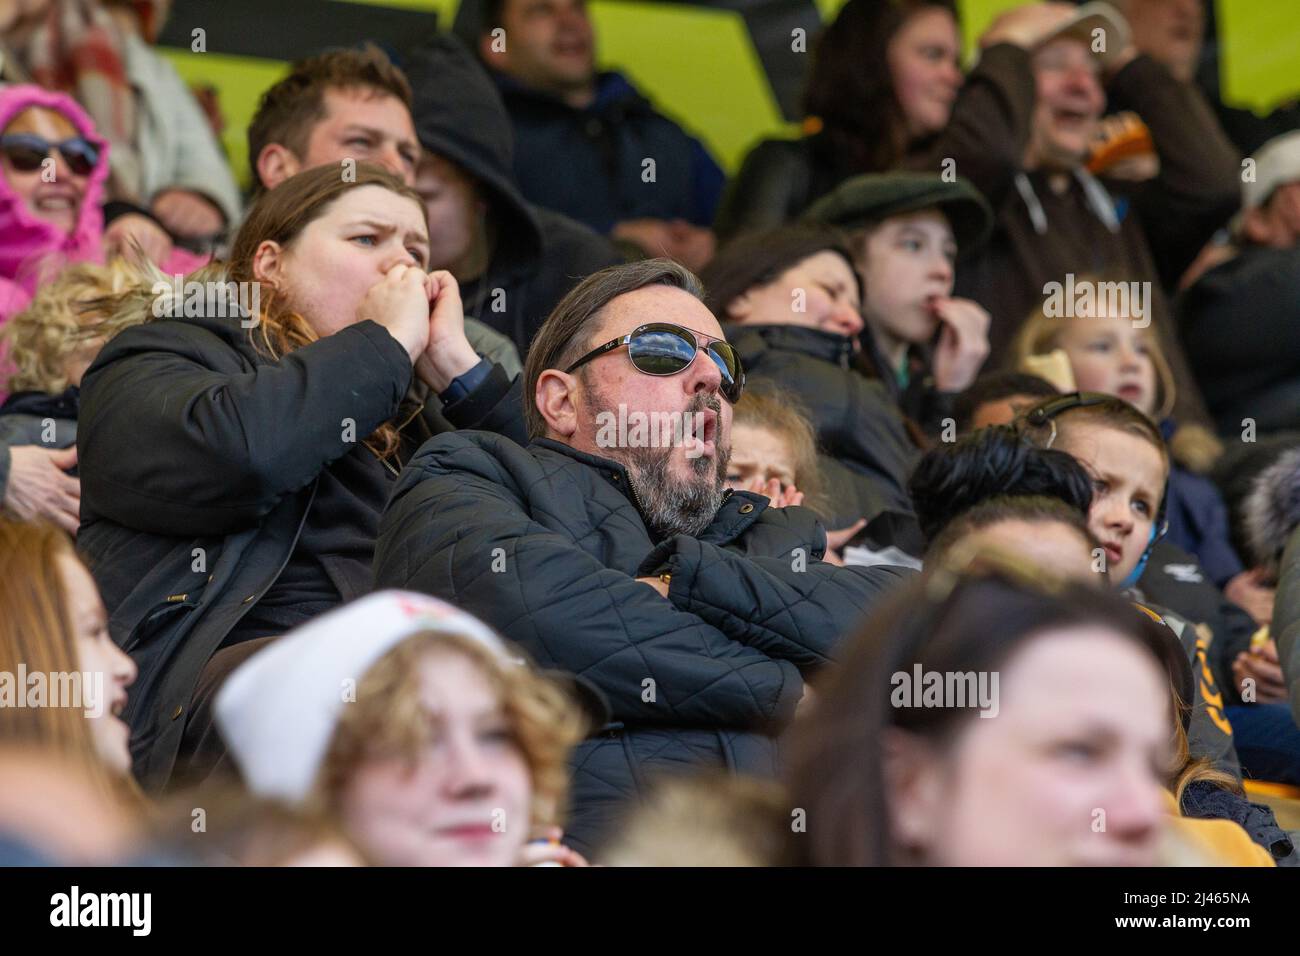 Los aficionados al fútbol y los espectadores con expresiones faciales reaccionan al juego que están viendo Foto de stock